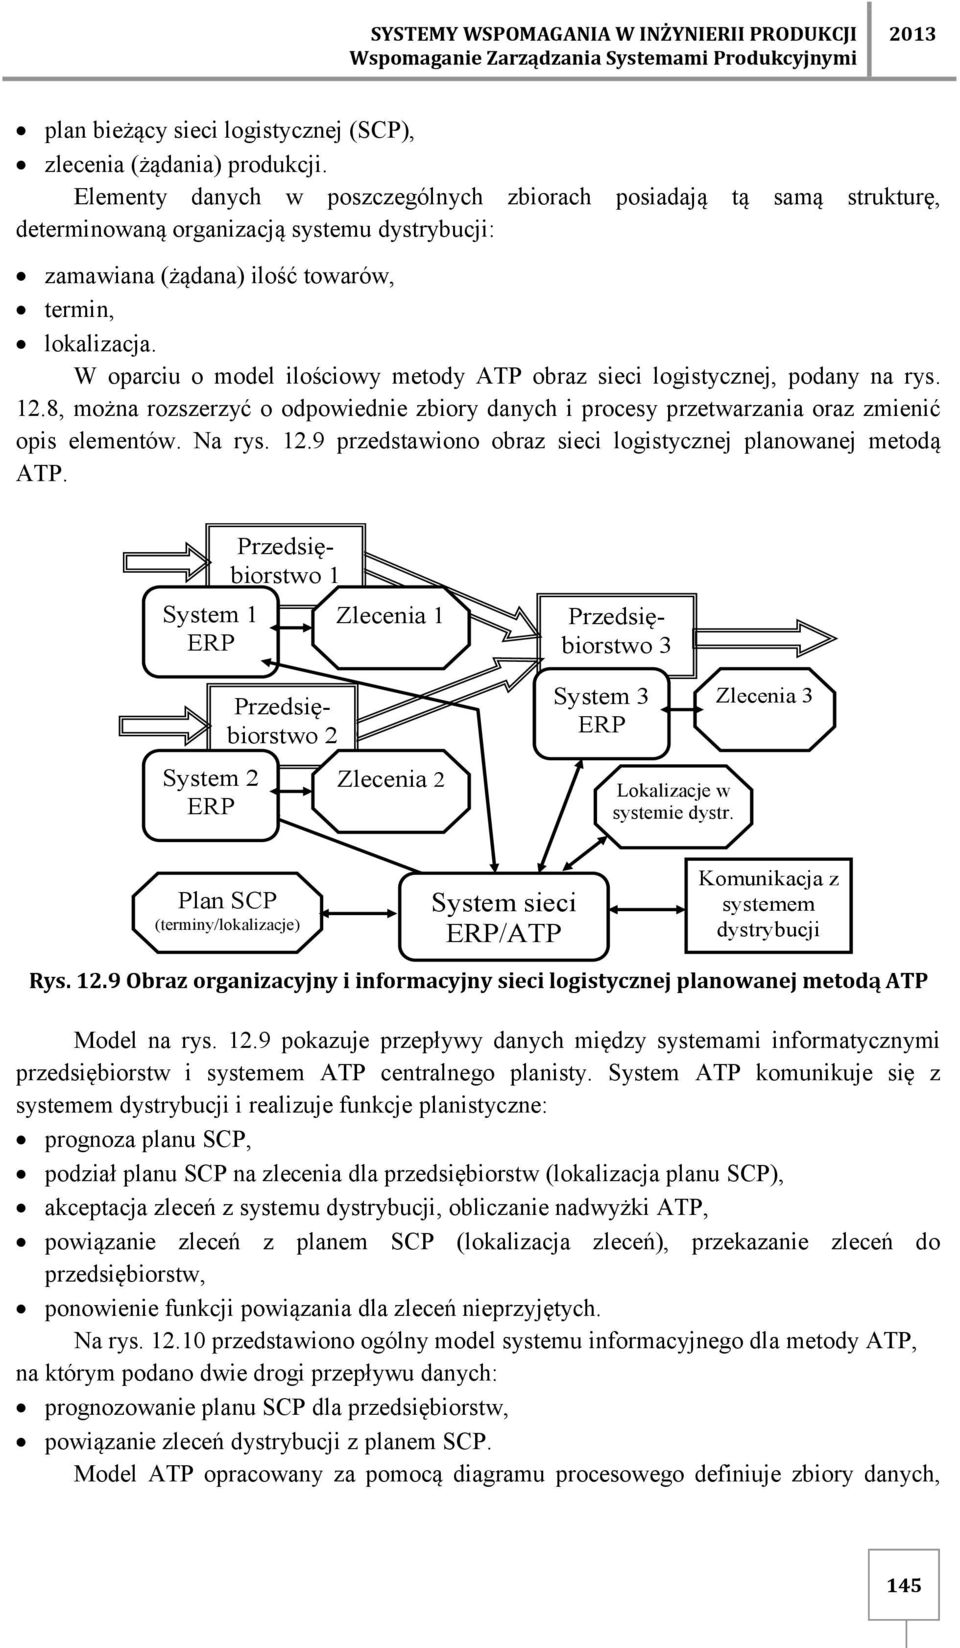 W oparciu o model ilościowy metody ATP obraz sieci logistycznej, podany na rys. 12.8, można rozszerzyć o odpowiednie zbiory danych i procesy przetwarzania oraz zmienić opis elementów. Na rys. 12.9 przedstawiono obraz sieci logistycznej planowanej metodą ATP.